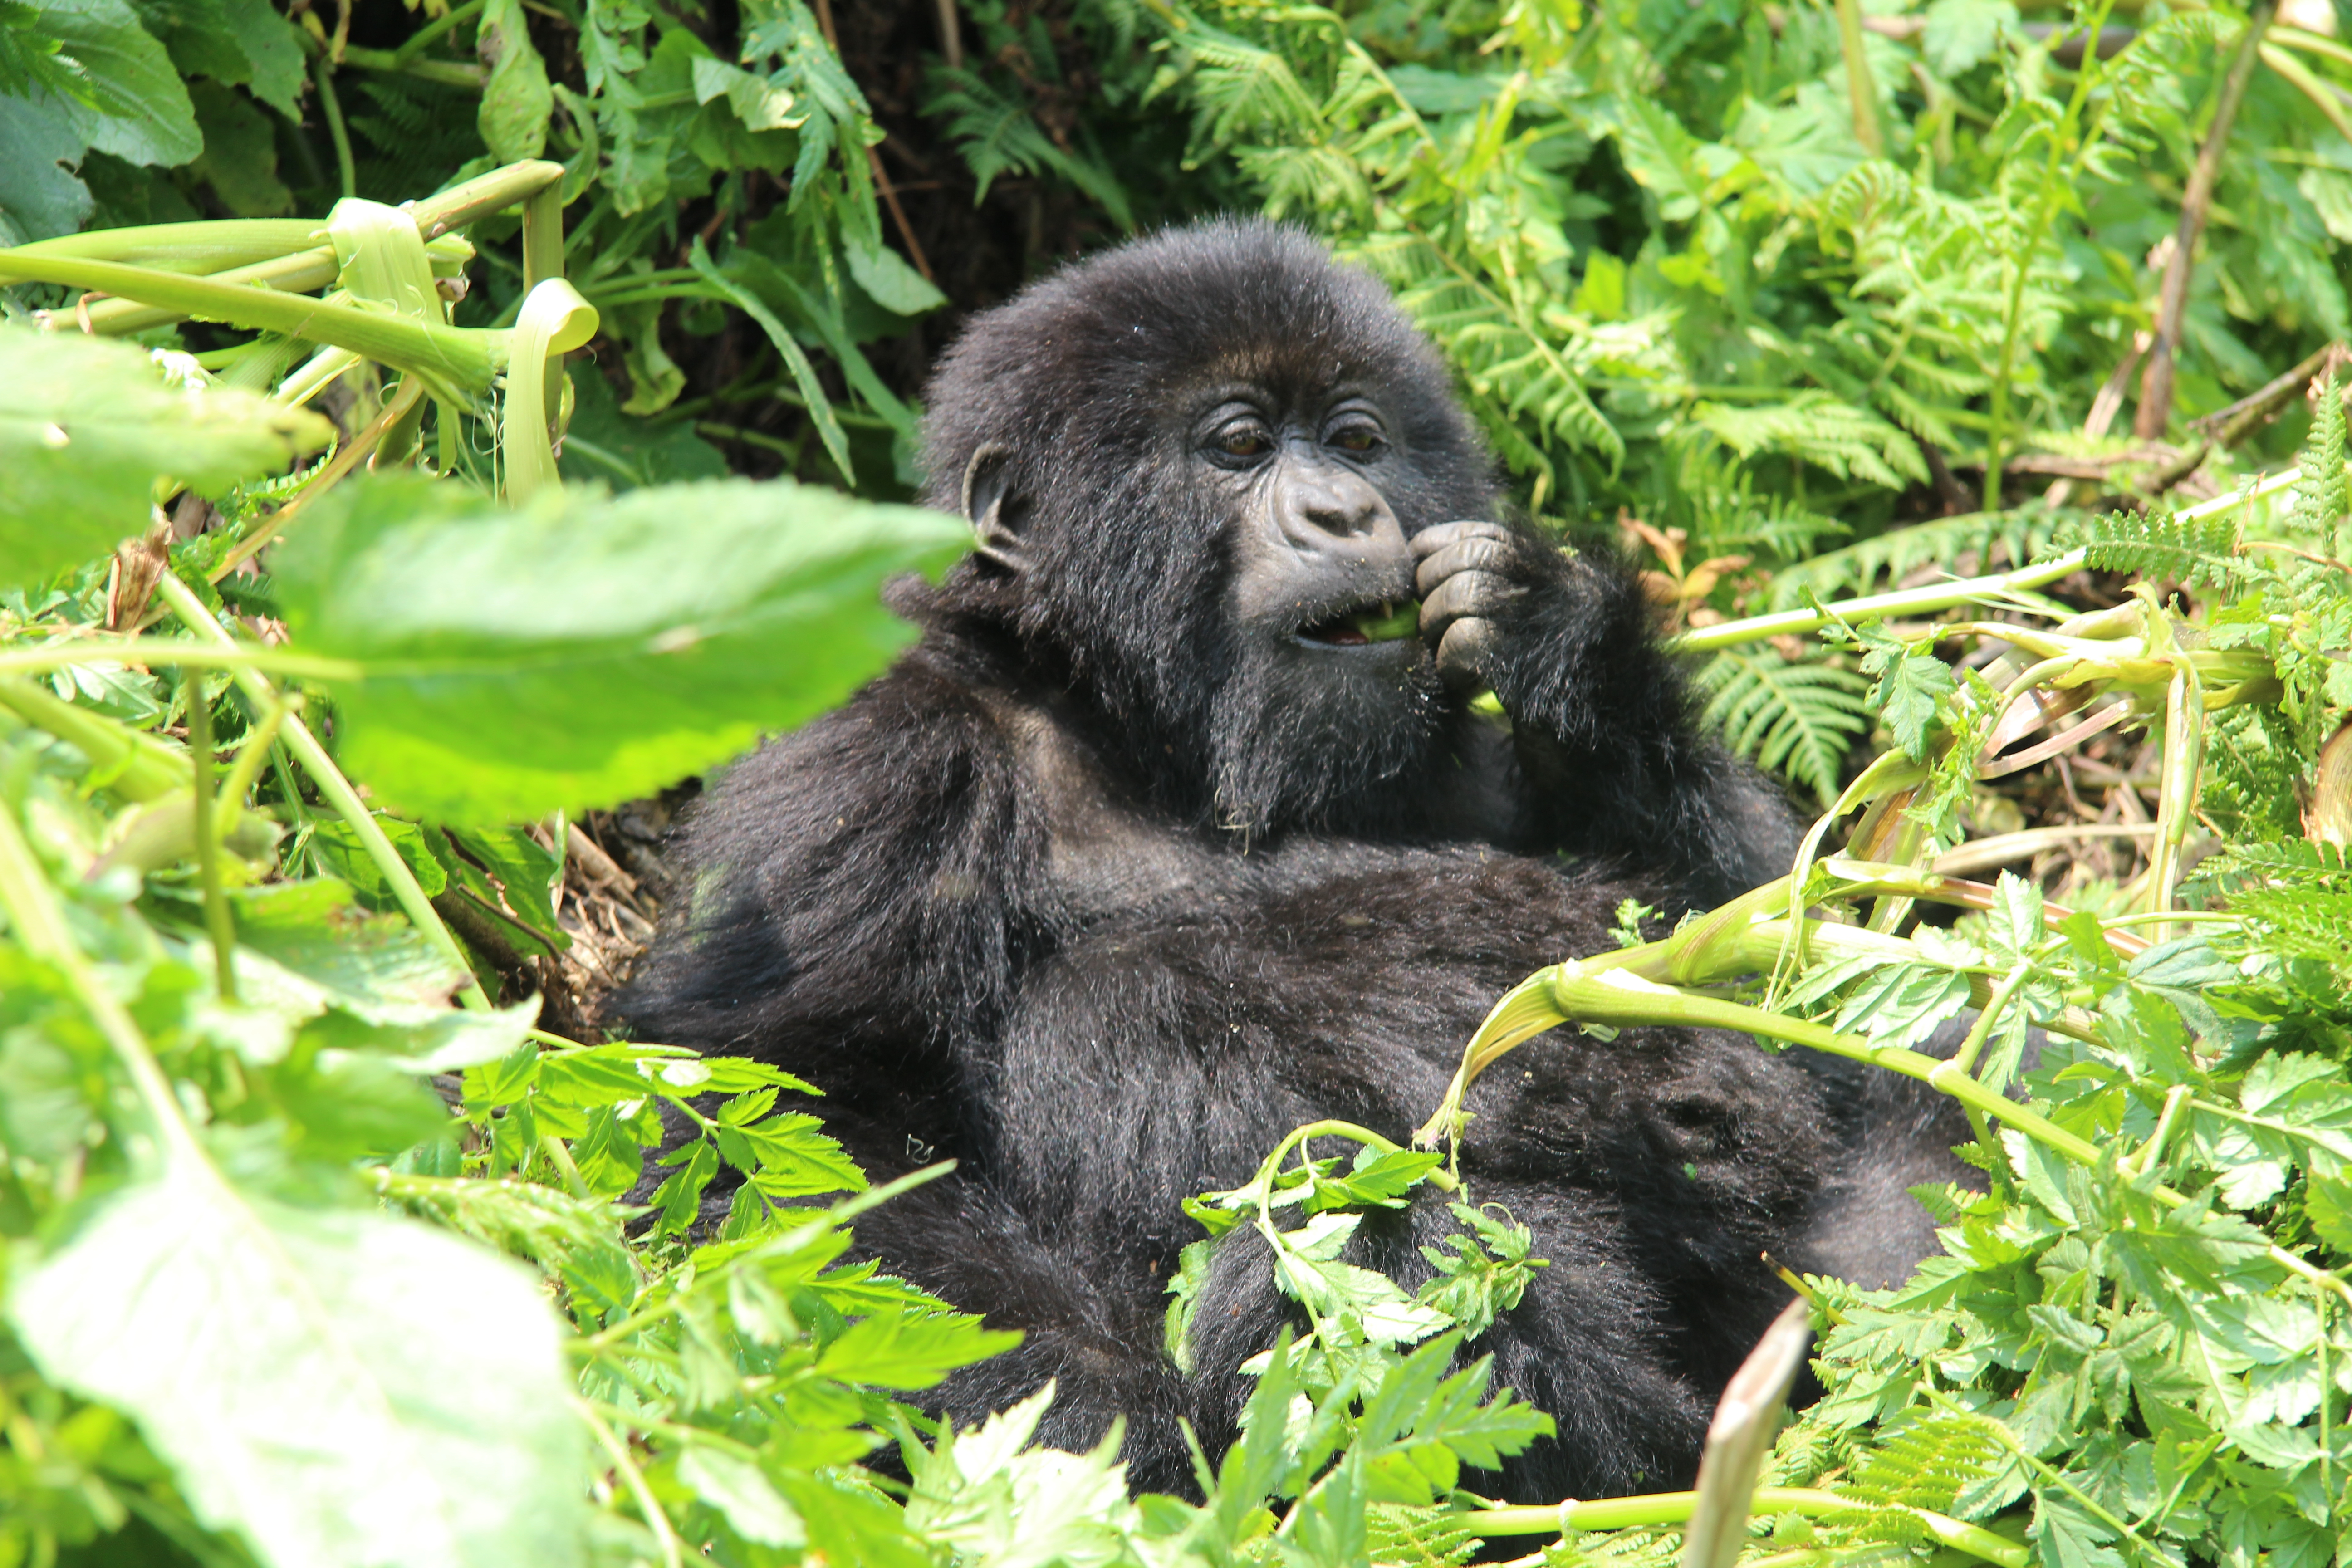 wp-content/uploads/itineraries/Uganda/20160801-rwanda-gorillas-close (58).JPG